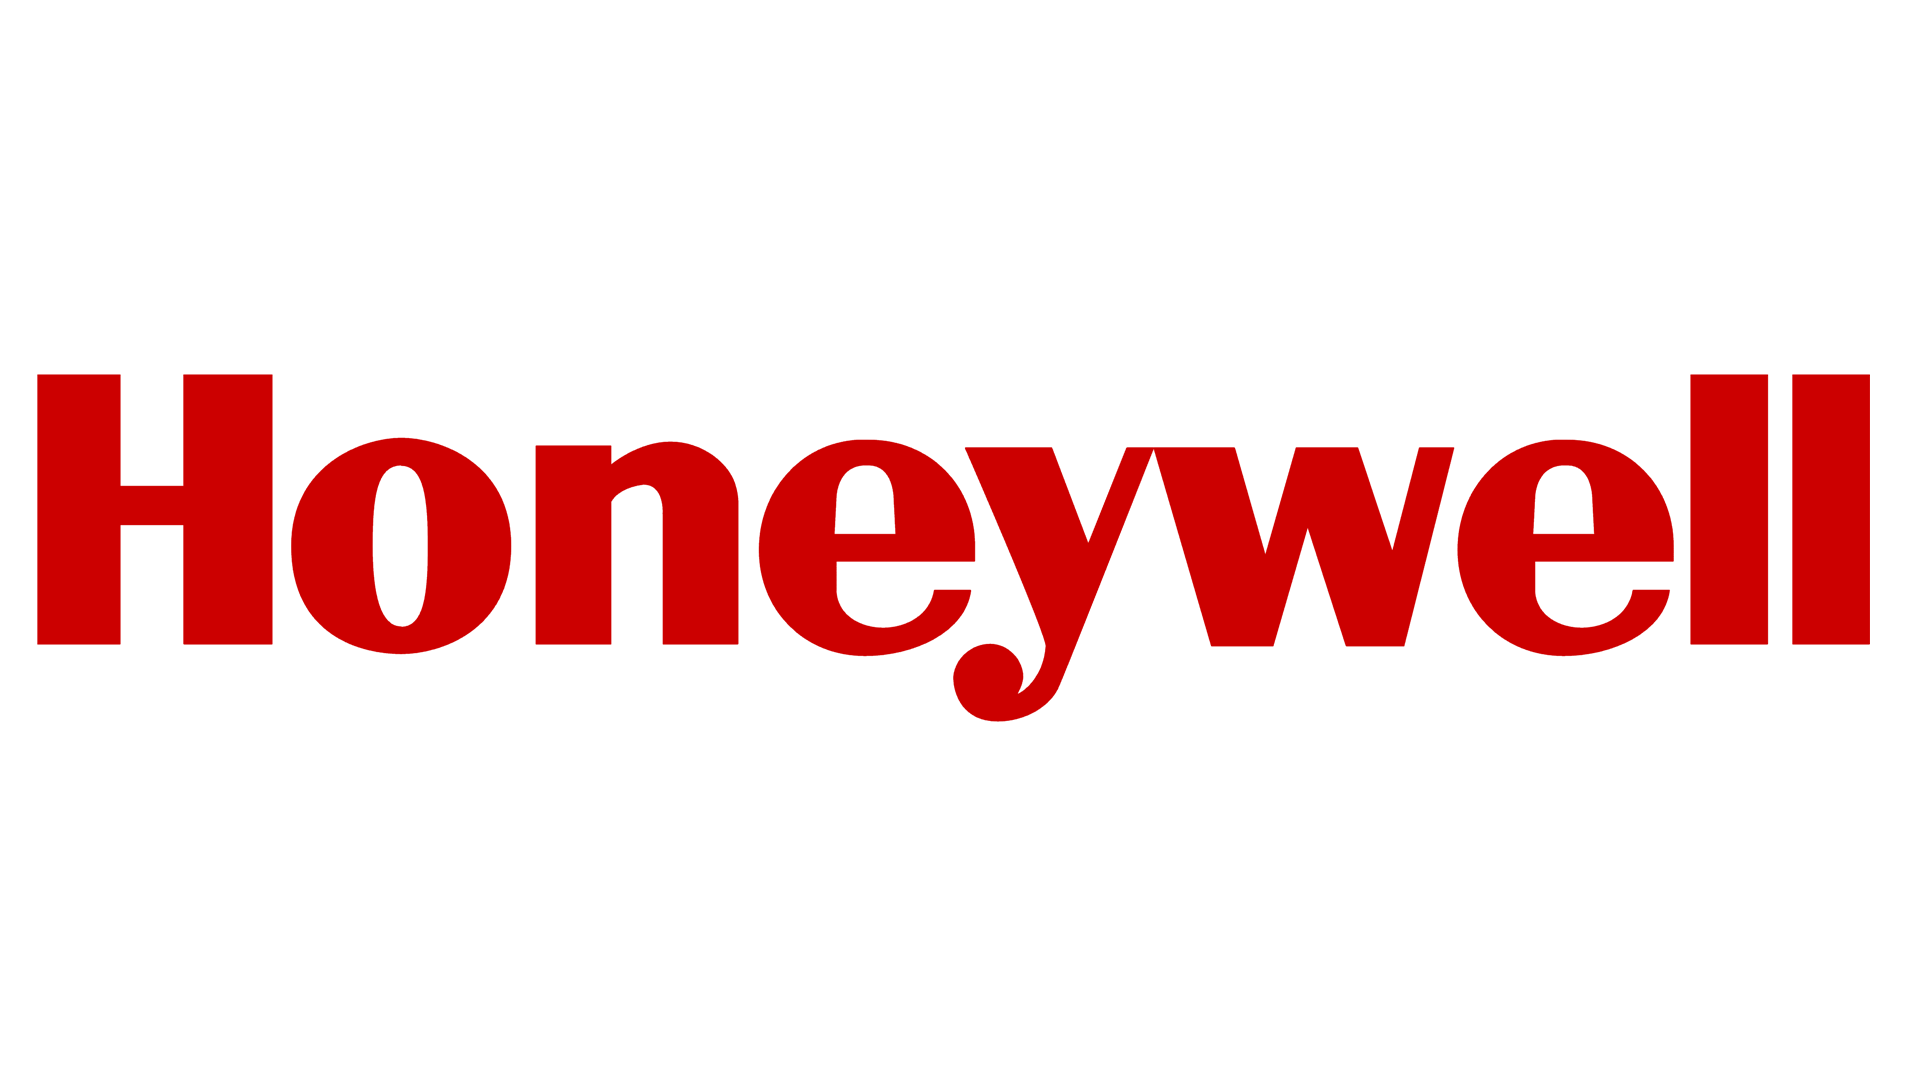 Logotipo da Honeywell, símbolo da Honeywell, significado, história e evolução